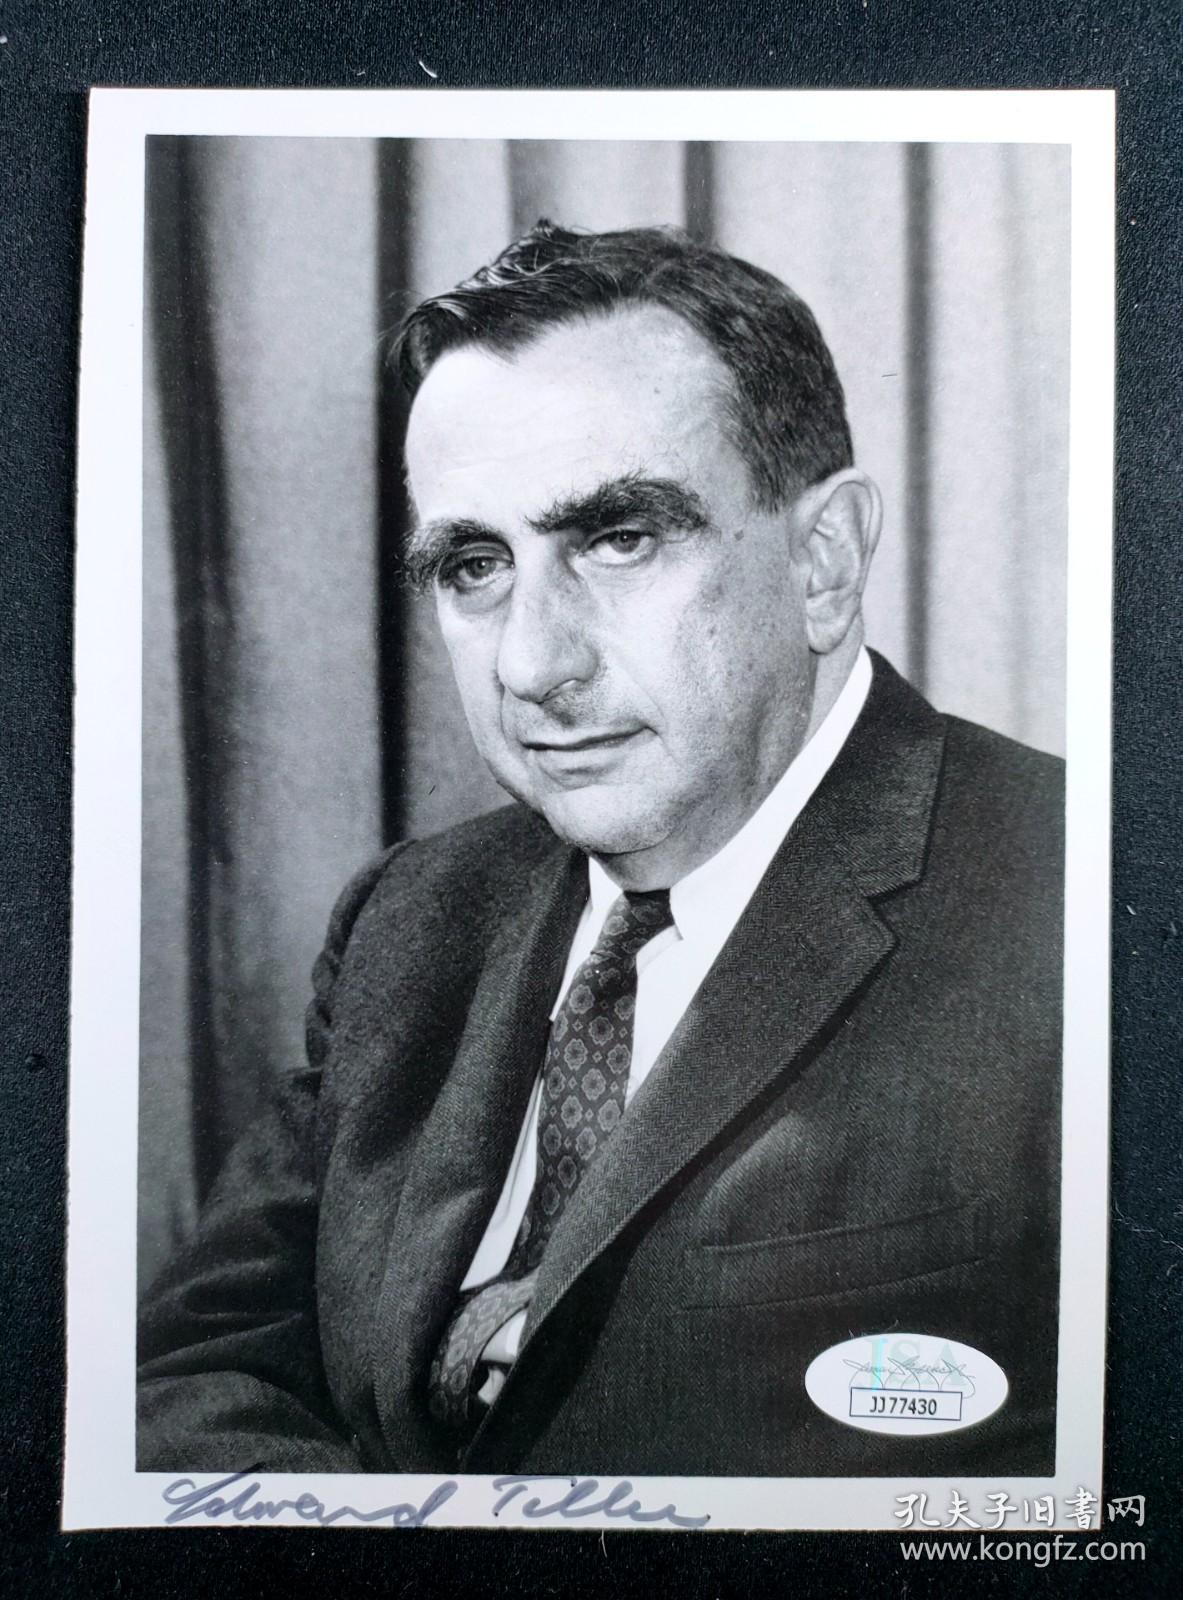 “人类氢弹之父” 爱德华·泰勒 亲笔签名原版肖像照片  由三大权威签名鉴定公司之一JSA鉴定